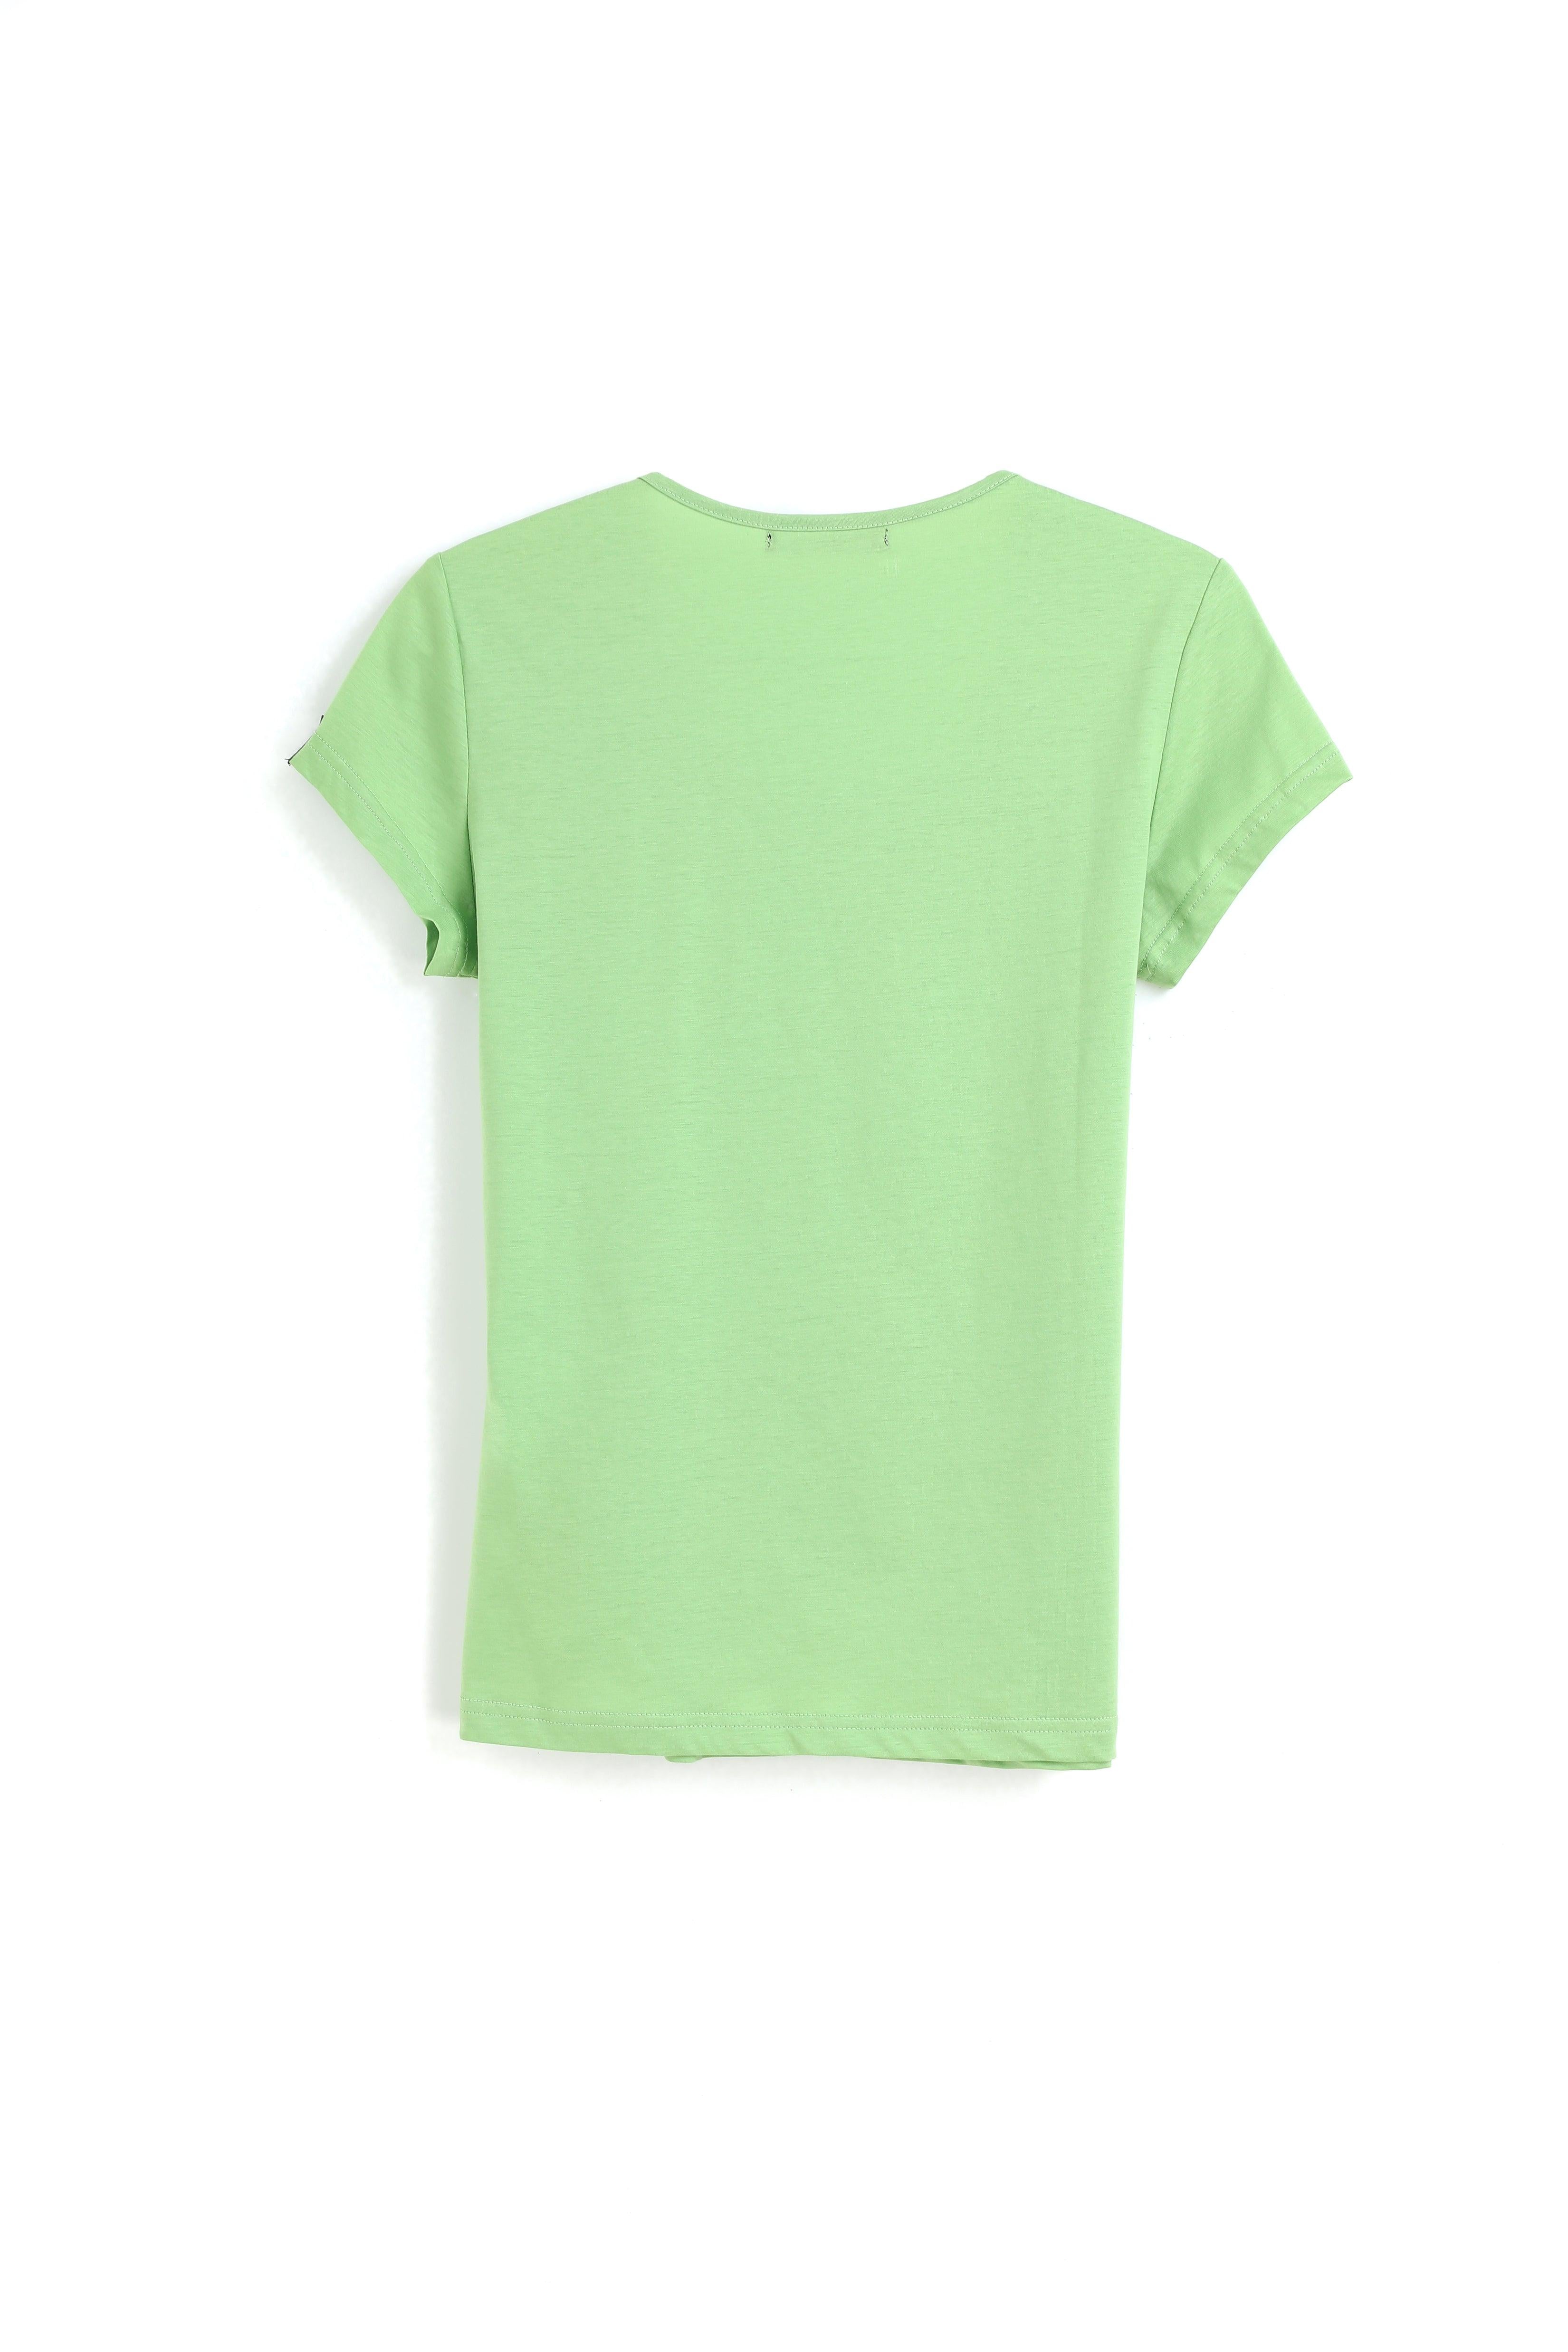 135G Ultra light Deep U Neck Mercerized Cotton Women T-shirt - Bellemere New York 